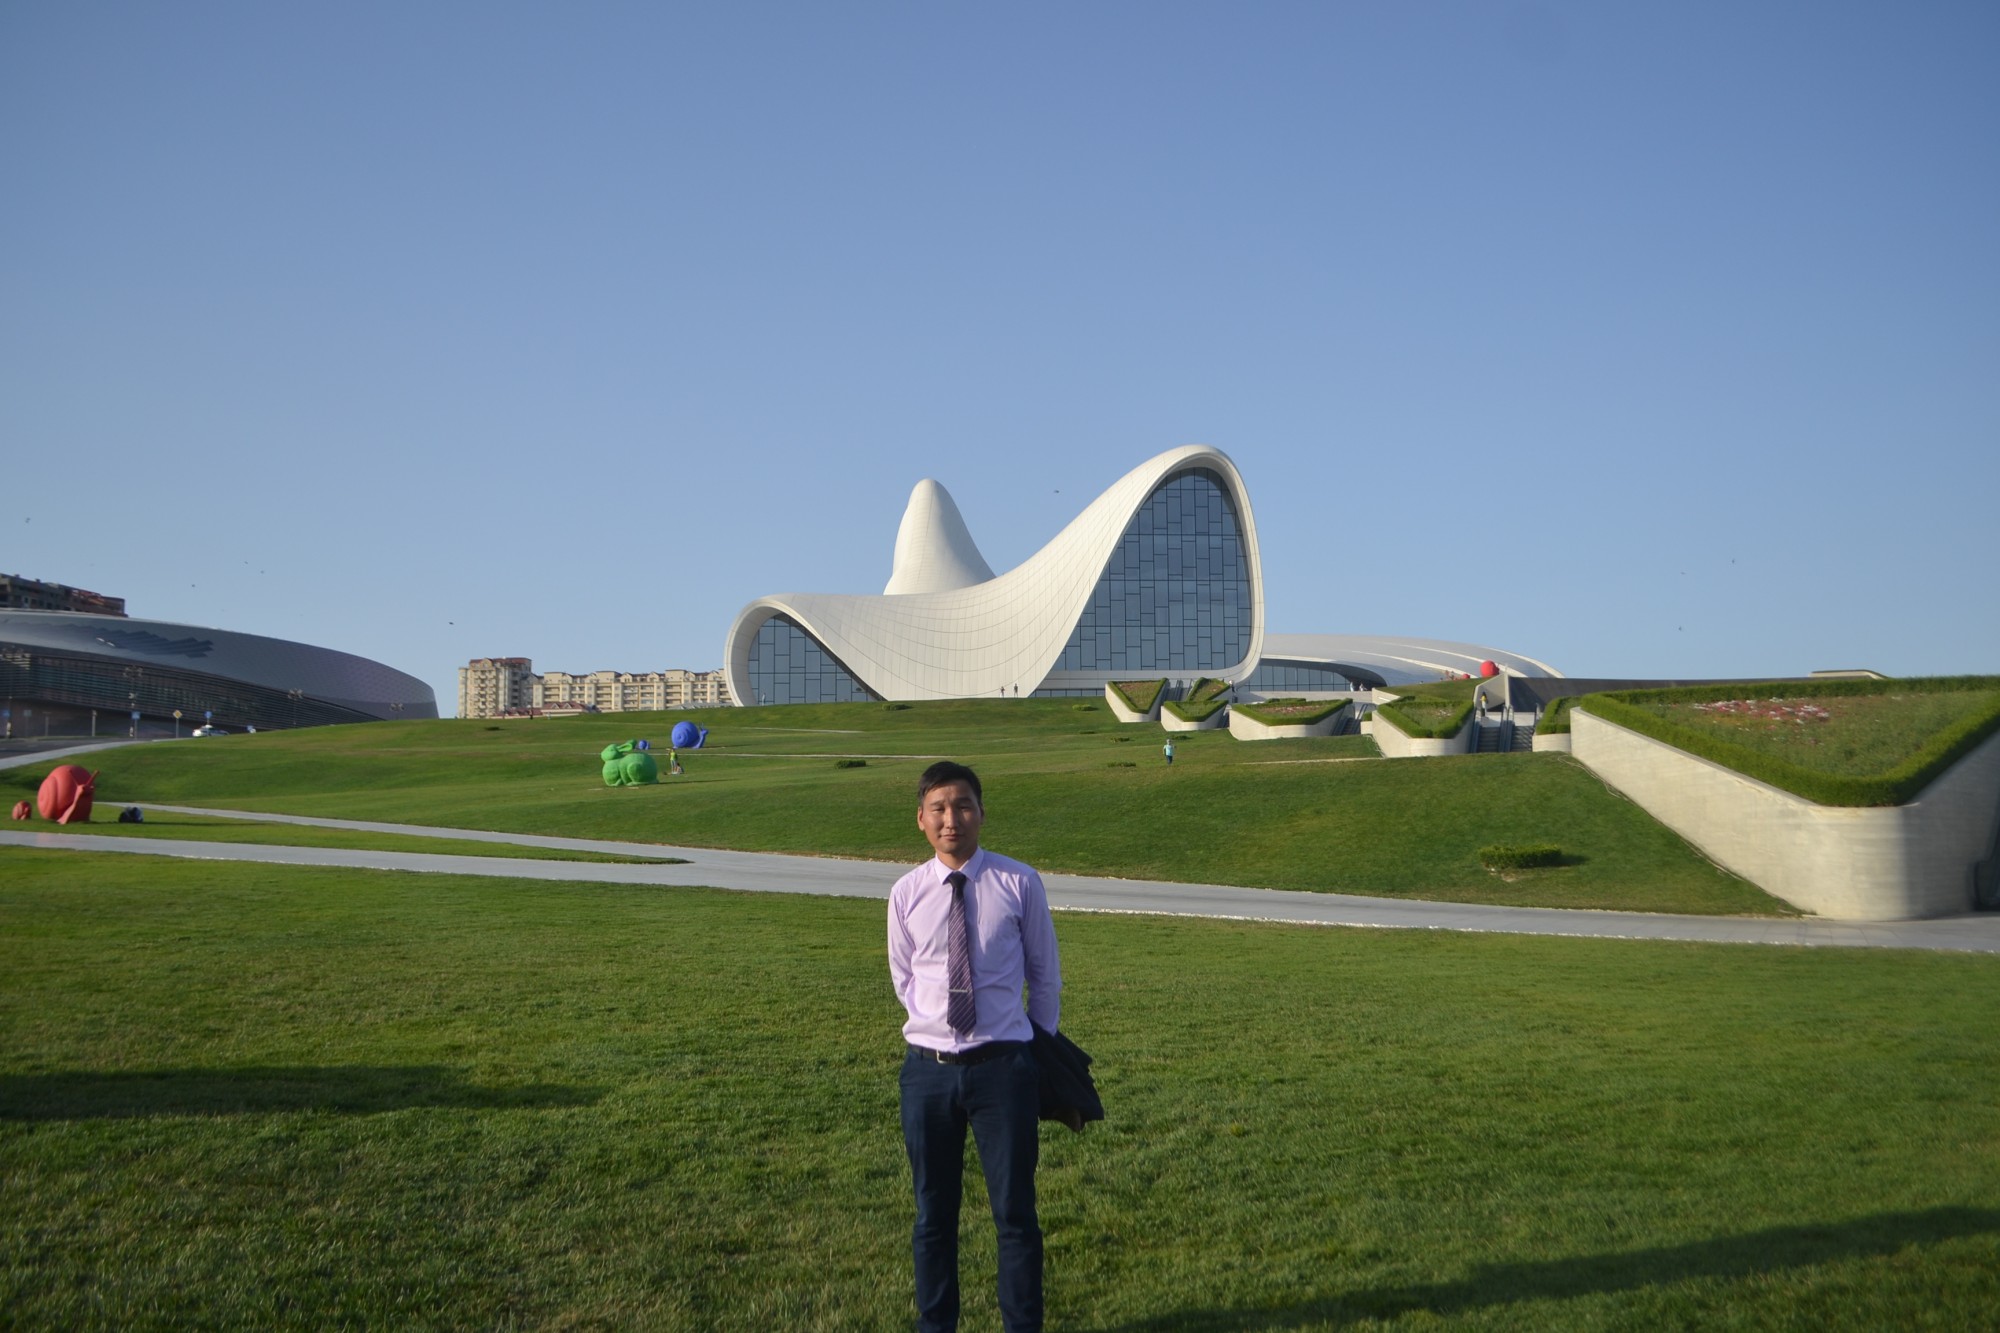 "Mongolian Economy" сэтгүүлийн сэтгүүлч Г.Даваадорж. Гейдар Алиевын нэрэмжит төв. Баку. Энэ барилгыг нэг ч баганагүйгээр босгожээ.